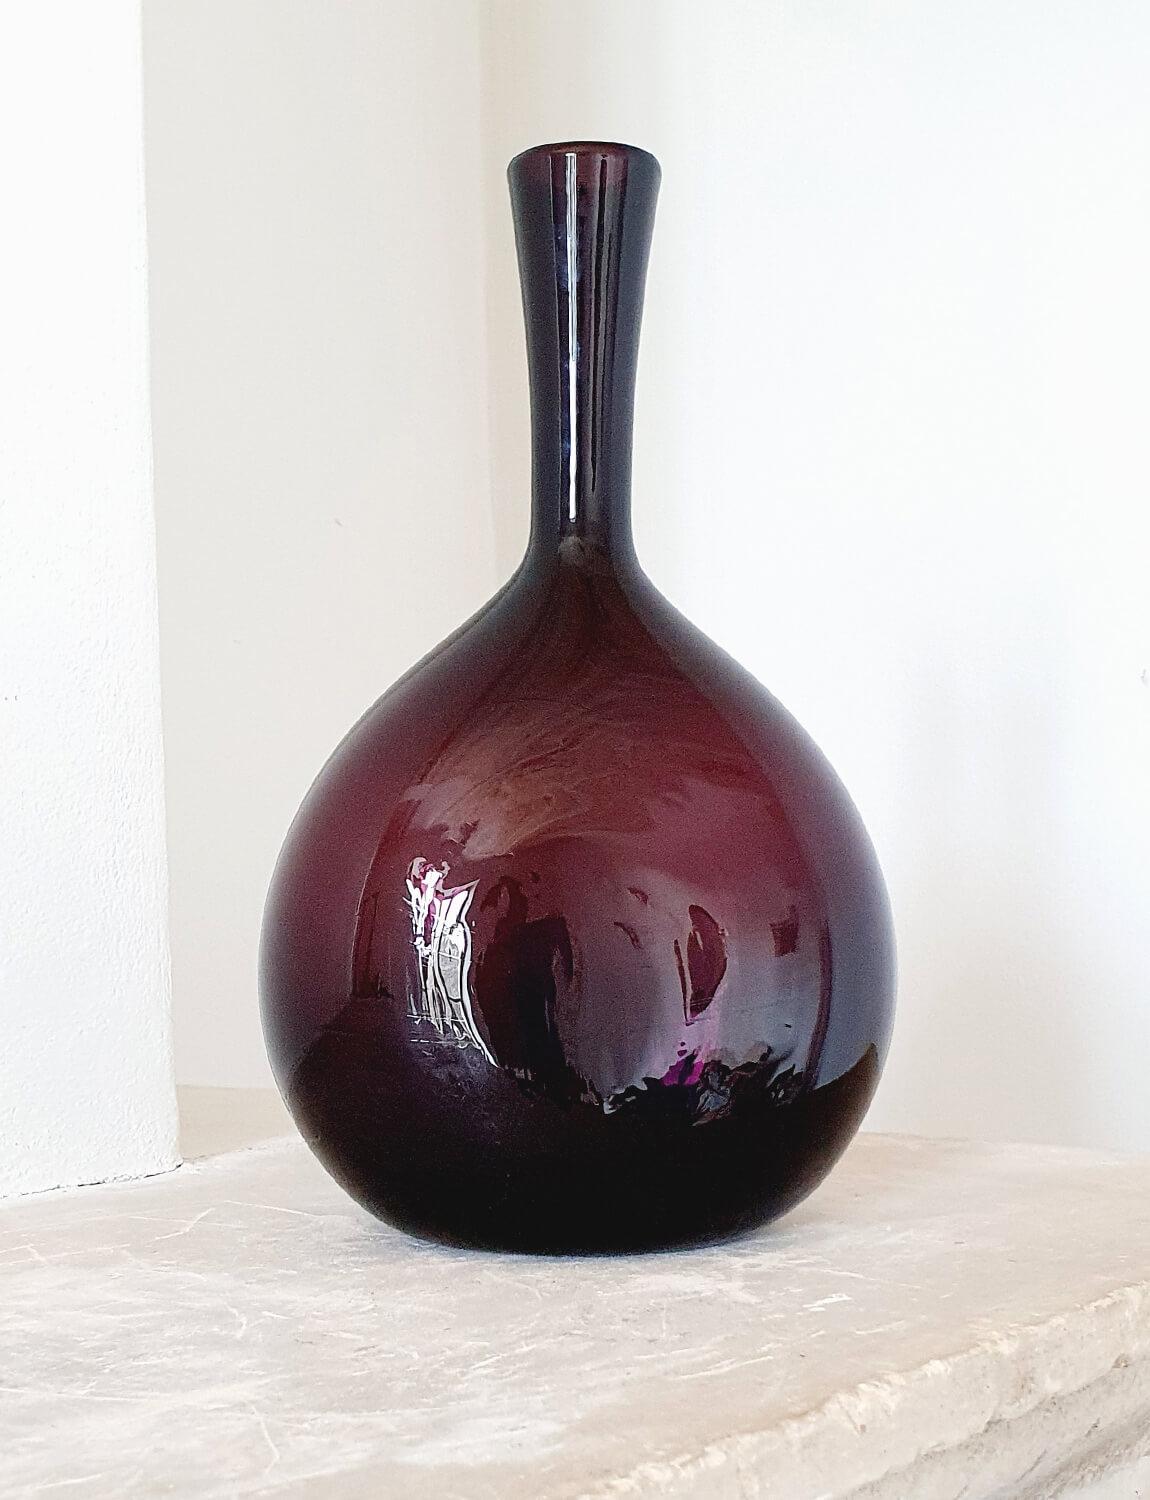 Eine italienische, mundgeblasene Empoli-Glas-Weinflasche aus cranberryfarbenem (dunkelviolettem) Glas. Diese außergewöhnliche Flasche wurde in den 1950er Jahren in Empoli mundgeblasen. Im letzten Jahrhundert war Empoli in der Toskana neben Murano